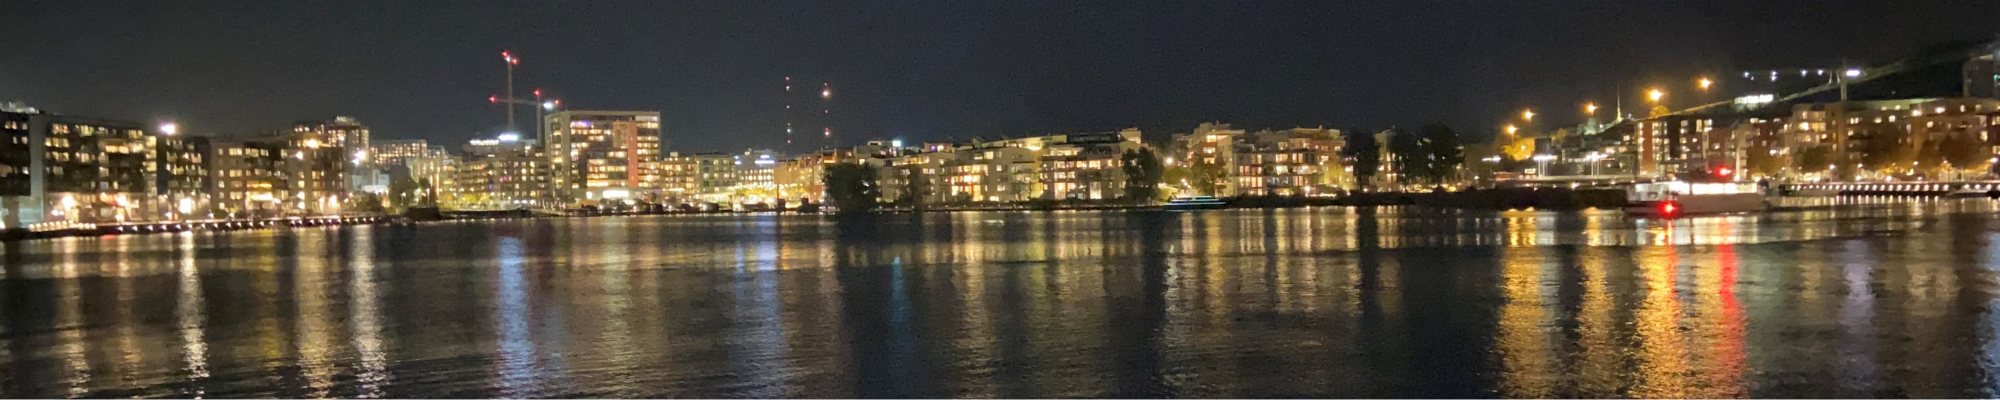 Nattbild från Sjöstan